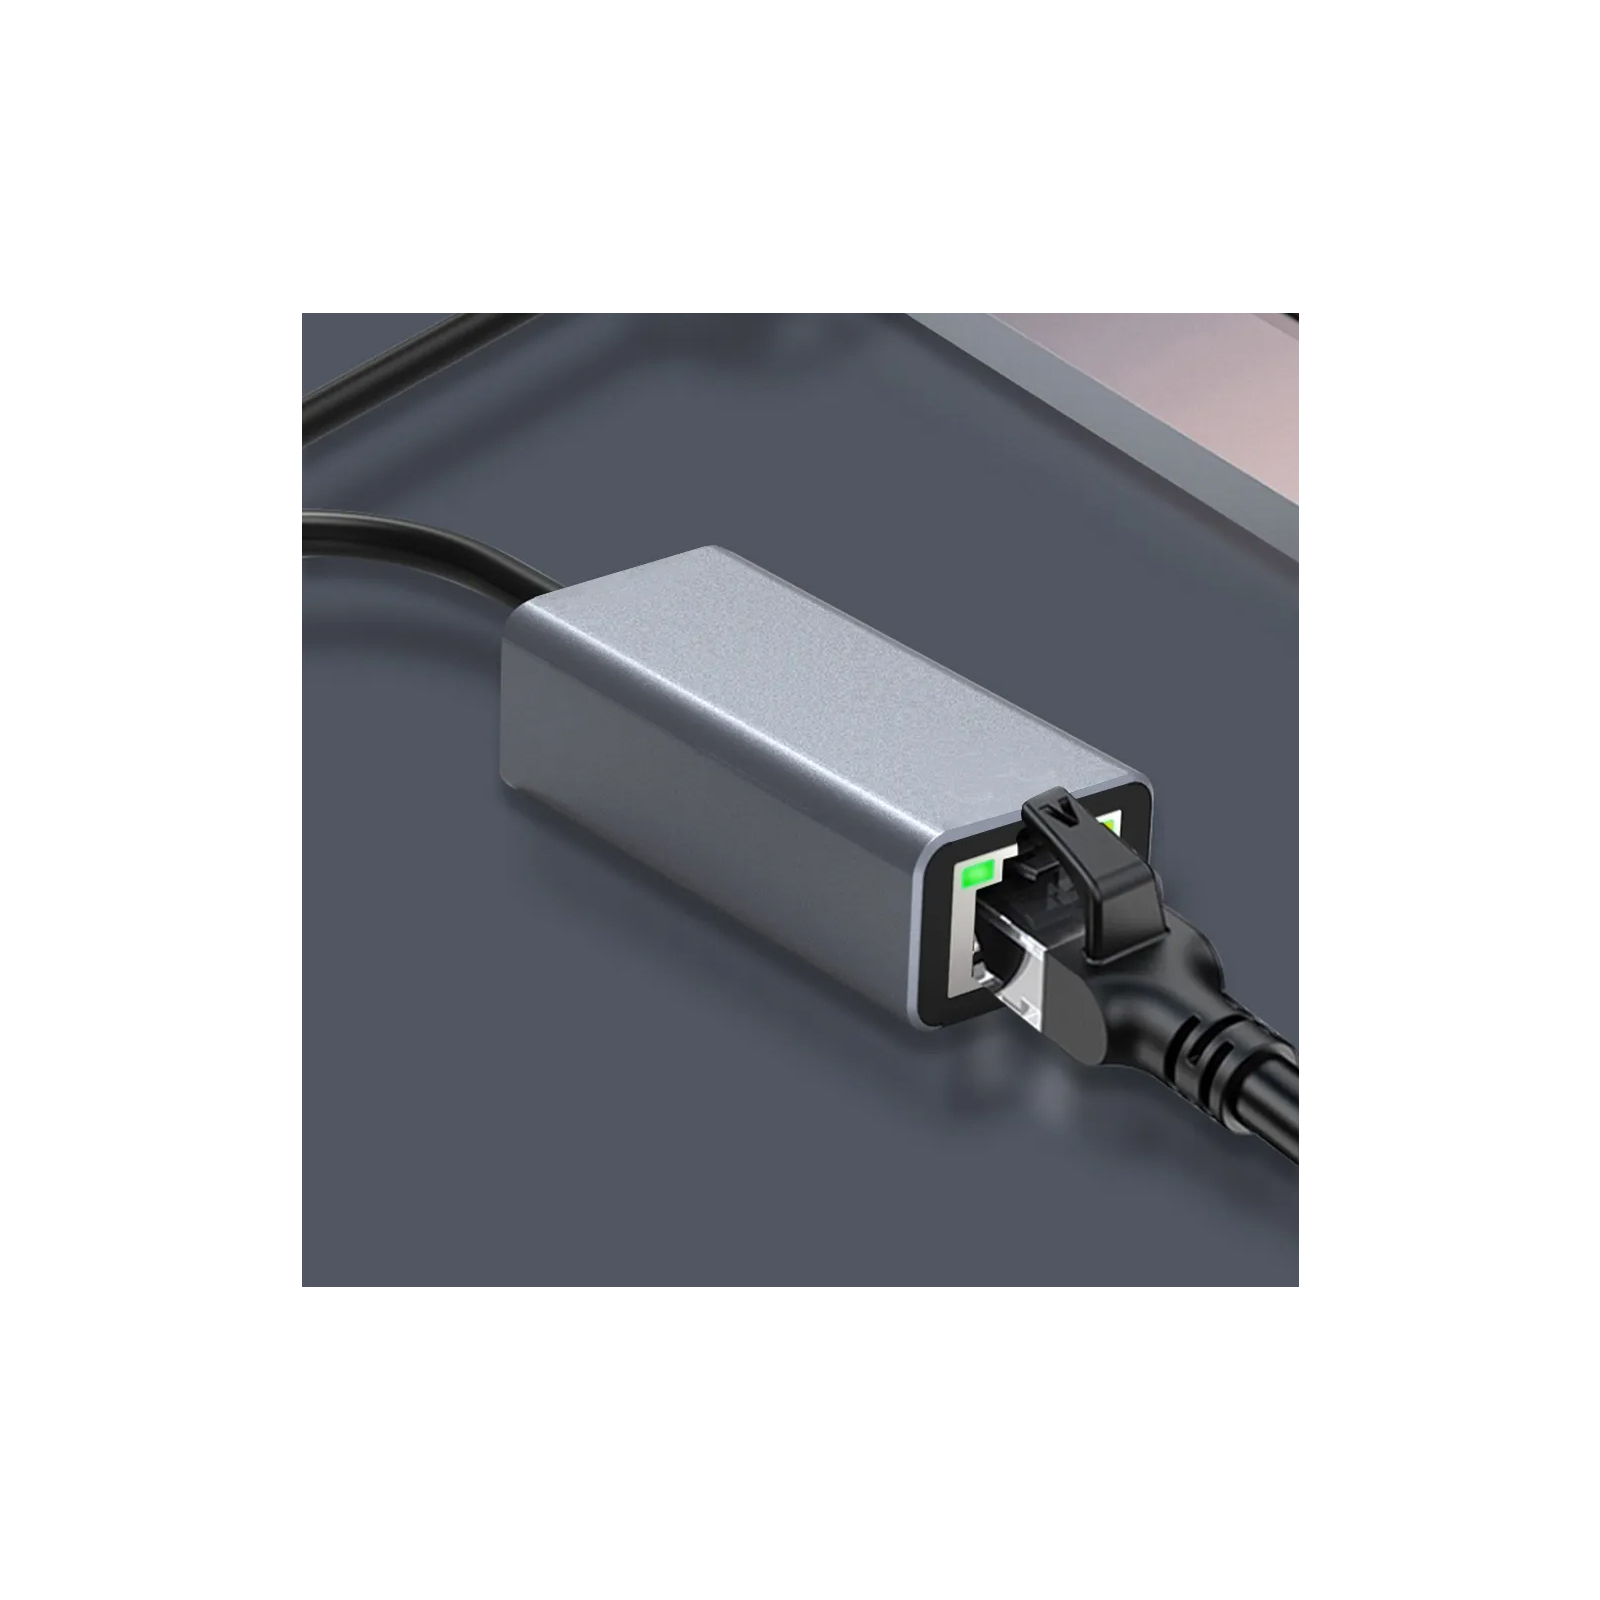 Переходник USB 3.0 to RJ45 Gigabit Lan Dynamode (DM-AD-GLAN) изображение 6